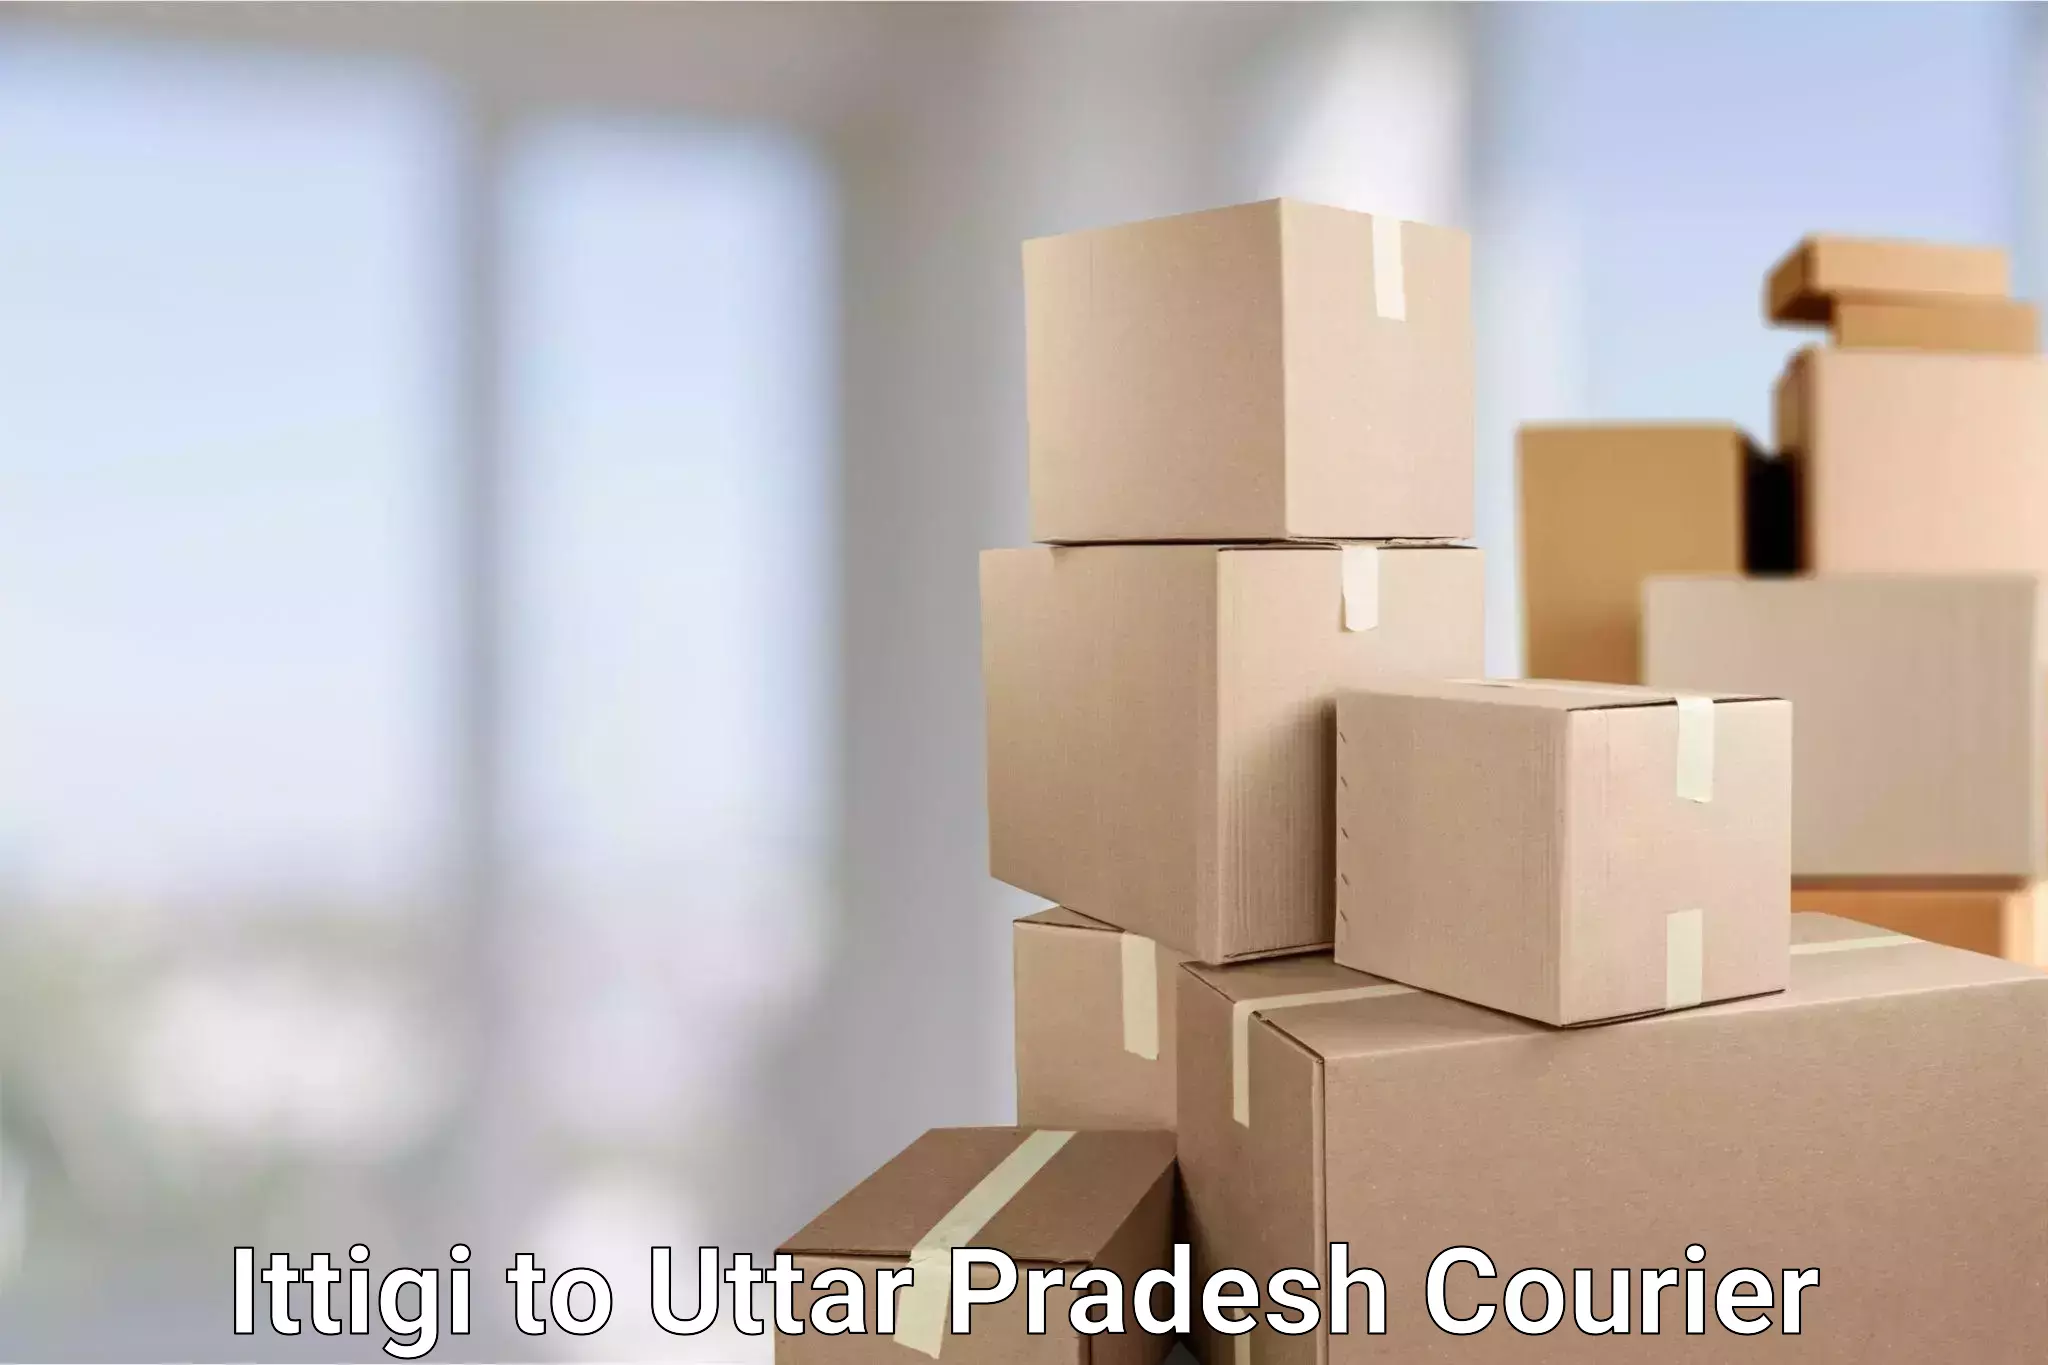 Online package tracking in Ittigi to Uttar Pradesh